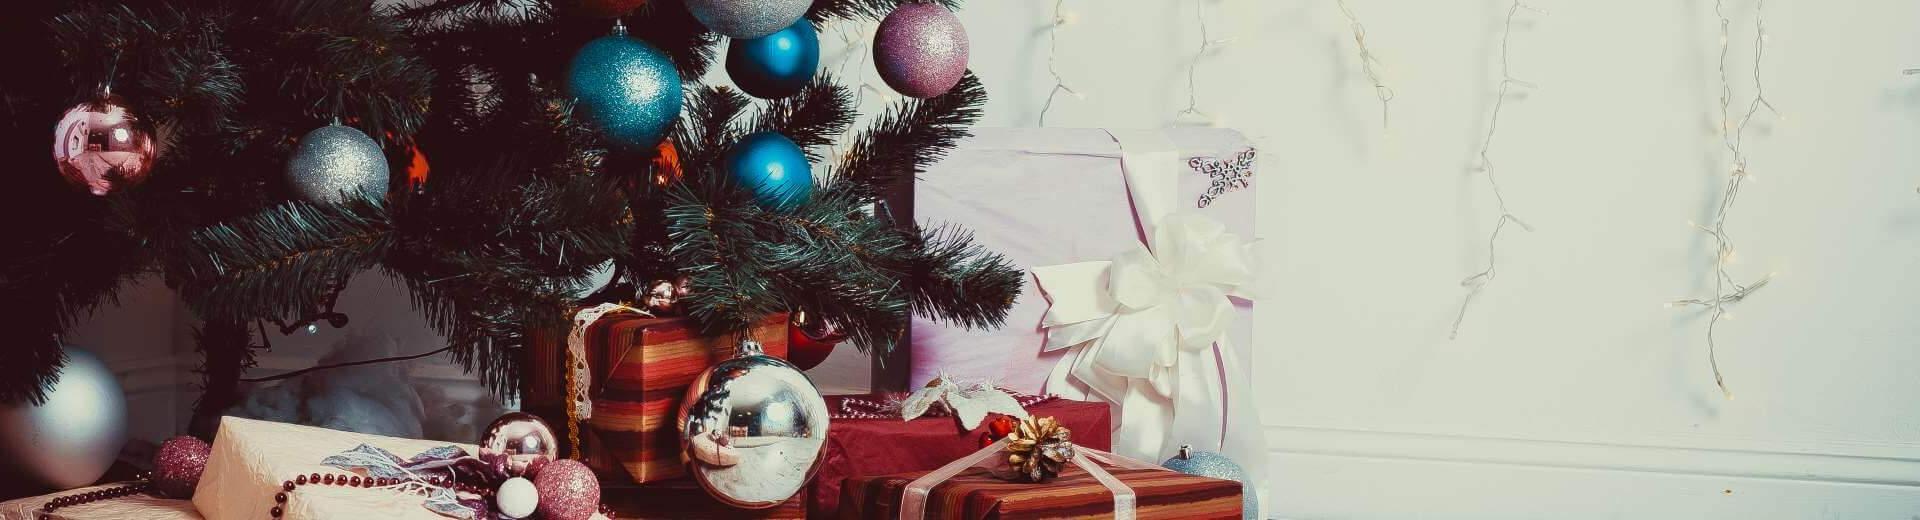 Weihnachten im Ferienhaus in Deutschland | Casamundo - Casamundo